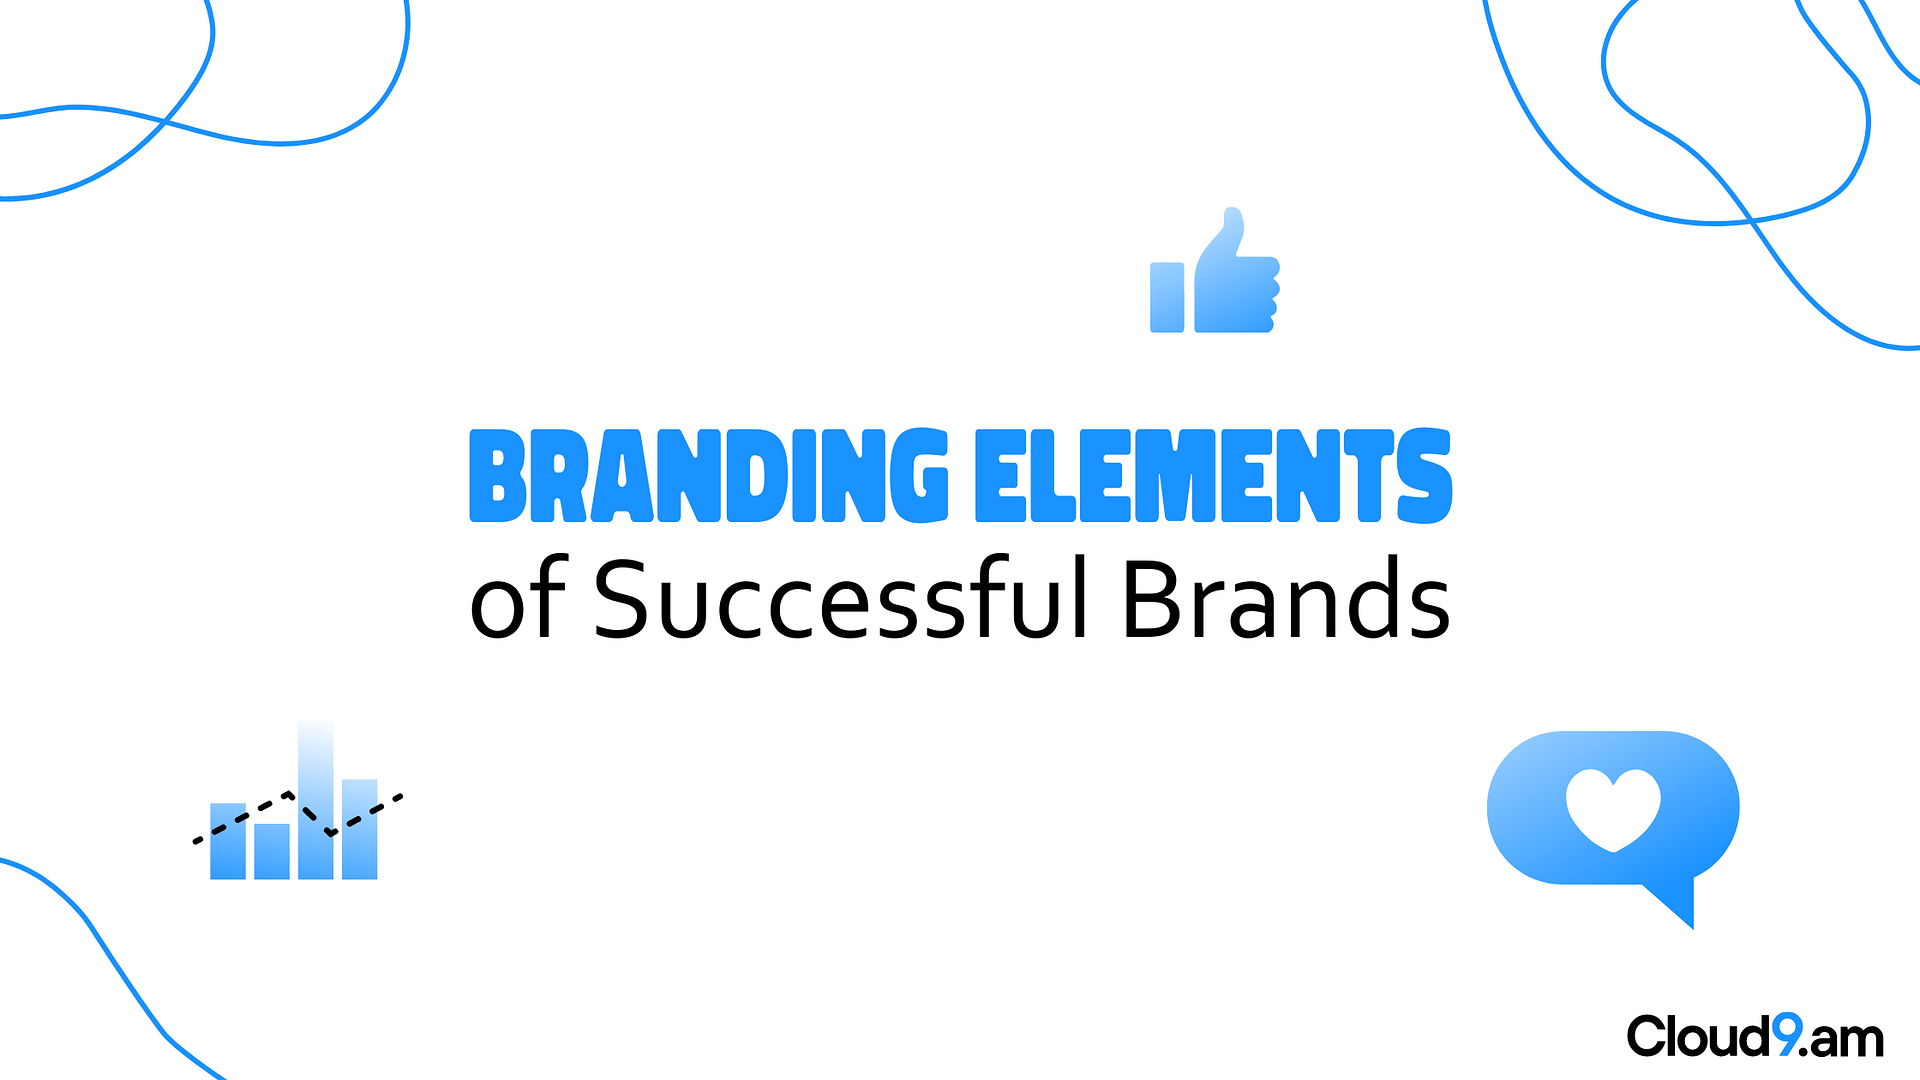 7 Branding elements of successful brands